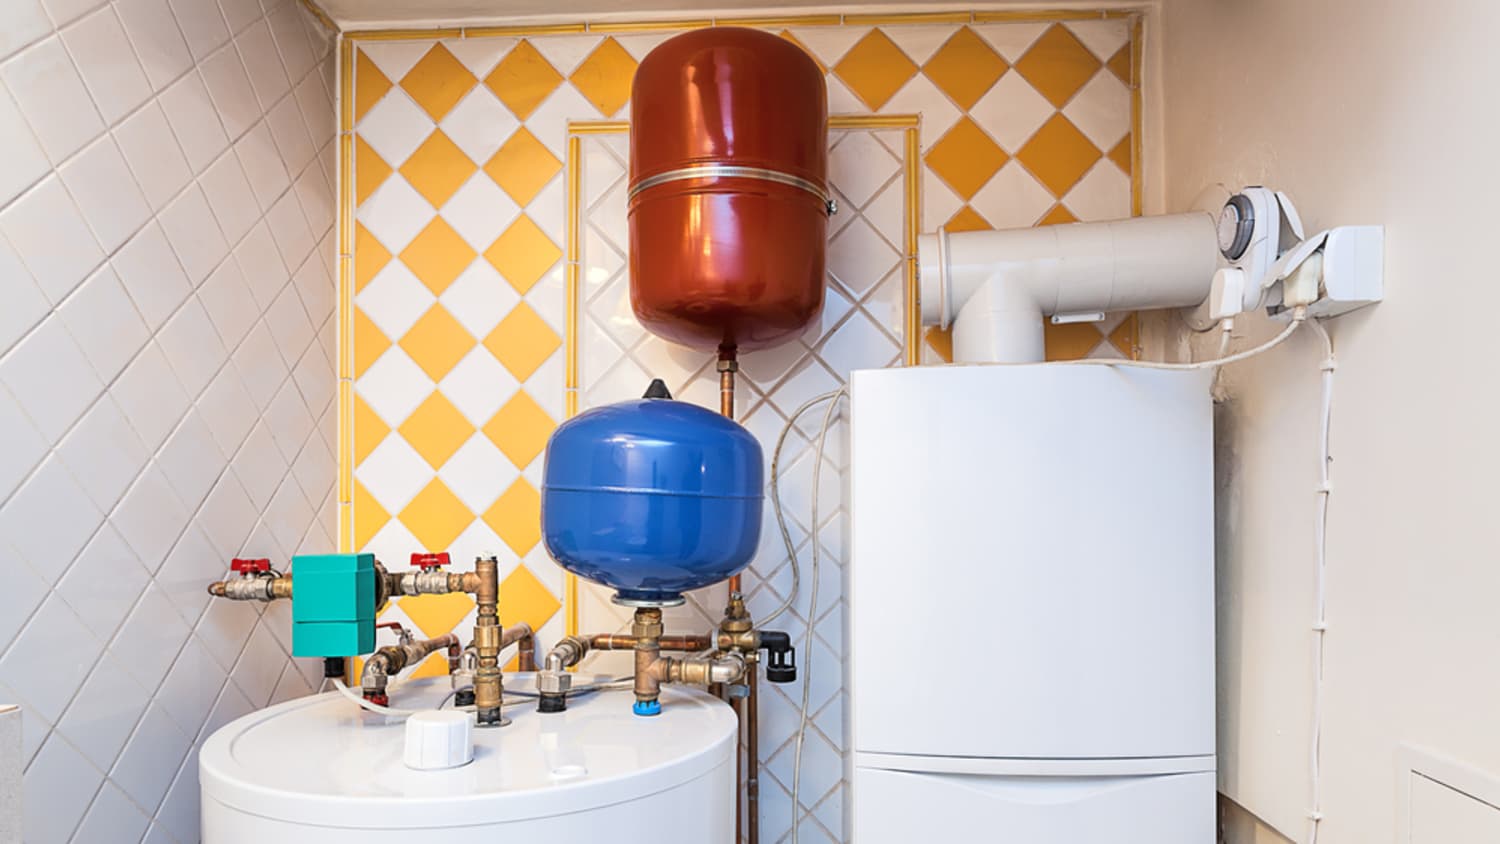 Kiểm tra (các) máy nước nóng: Nếu đơn vị bạn quan tâm có máy nước nóng dự trữ (loại sử dụng bồn chứa), bạn sẽ cần đặc biệt chú ý rằng nó hoạt động bình thường.Để vòi chảy một lúc, với máy nước nóng. Lò sưởi có hoạt động không, hoặc hoạt động kém (ví dụ: sau ba phút không có gì khác hơn là hơi ấm nhẹ)? Nếu máy nước nóng không hoạt động tốt, hãy lưu ý rằng việc thay thế và / hoặc loại bỏ sẽ rất tốn kém (bạn sẽ cần thuê một chuyên gia).Một cách khác để kiểm tra - nếu bạn không muốn chảy nước - là chạm vào tường phía trước máy sưởi. Nếu nó hoạt động, khu vực này sẽ ấm lên sau khi bạn để nó trong một thời gian.